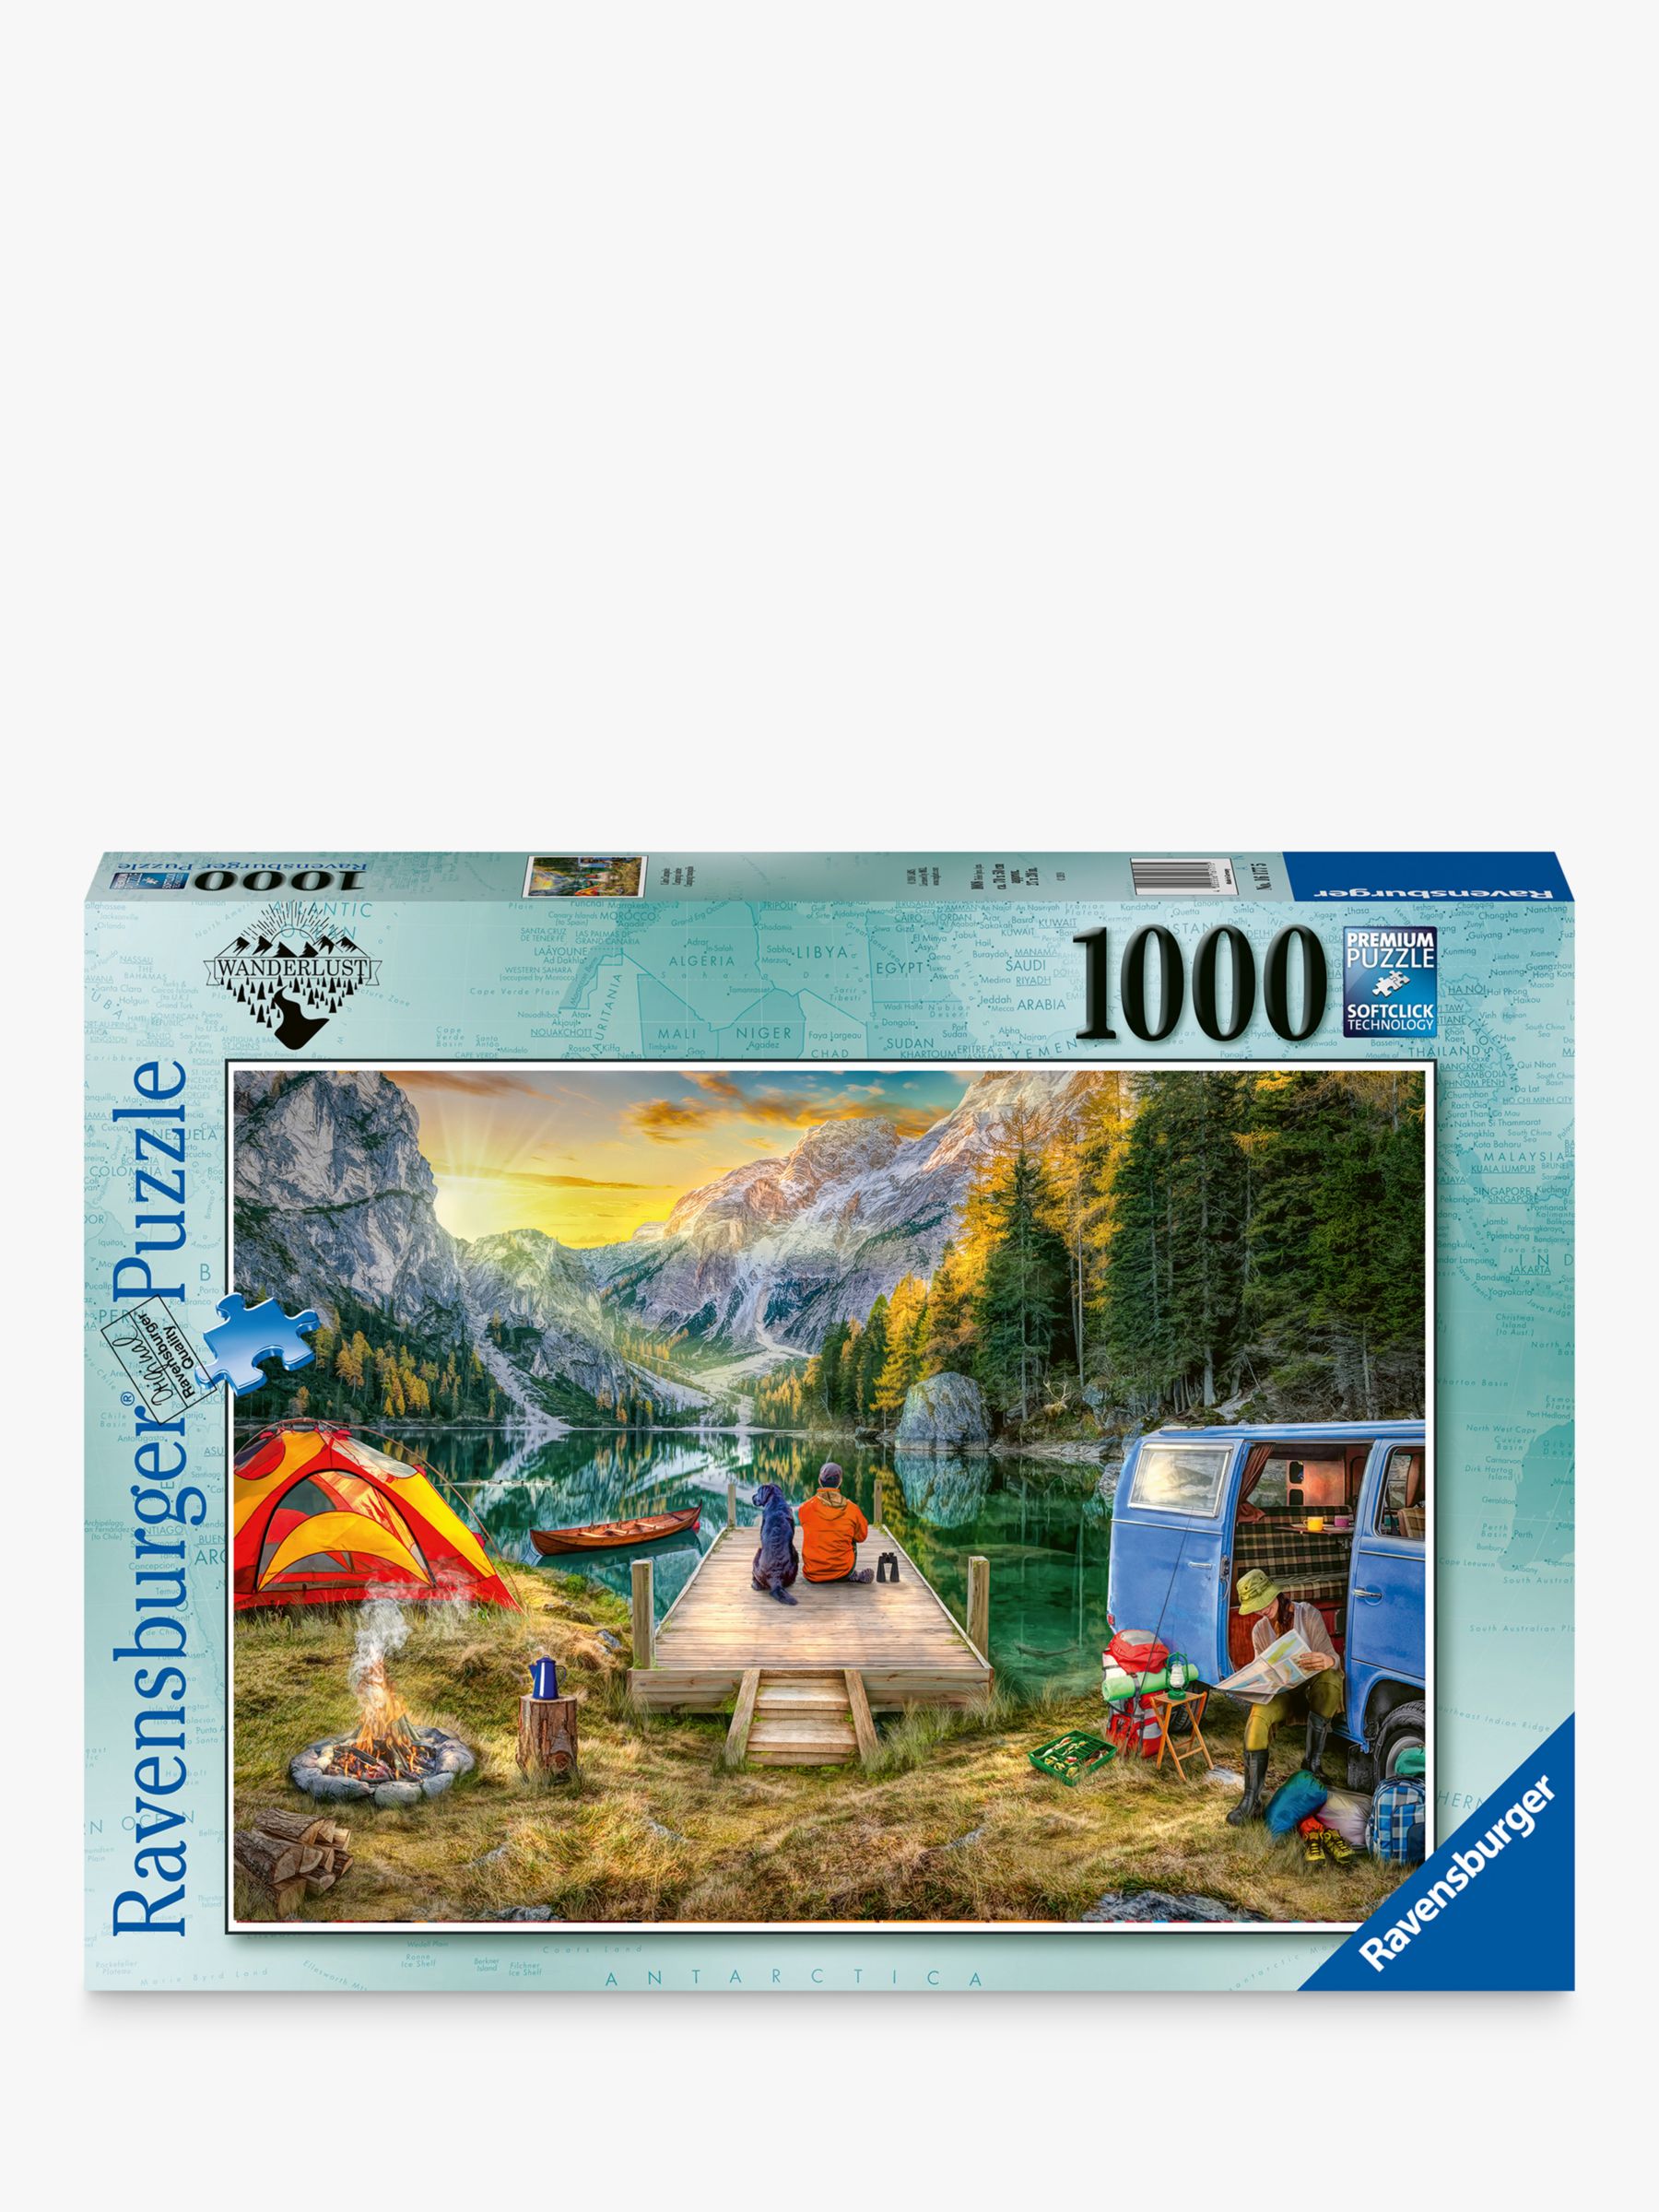 Ravensburger Calm Campsite Jigsaw Puzzle, 1000 Pieces